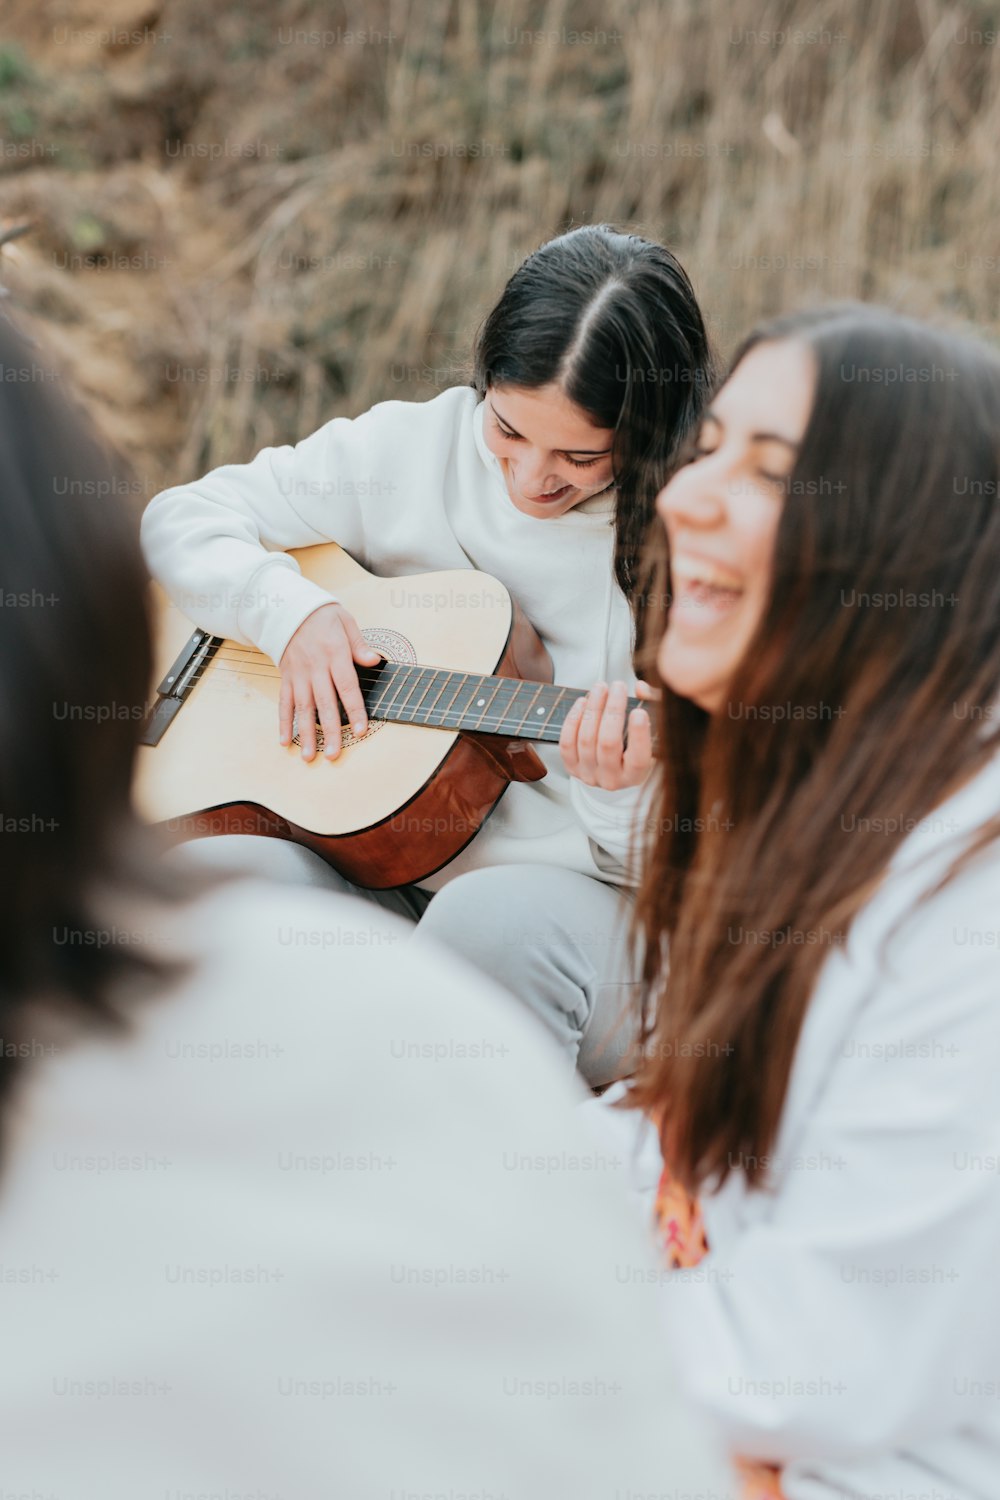 Una mujer tocando una guitarra mientras otra mujer mira